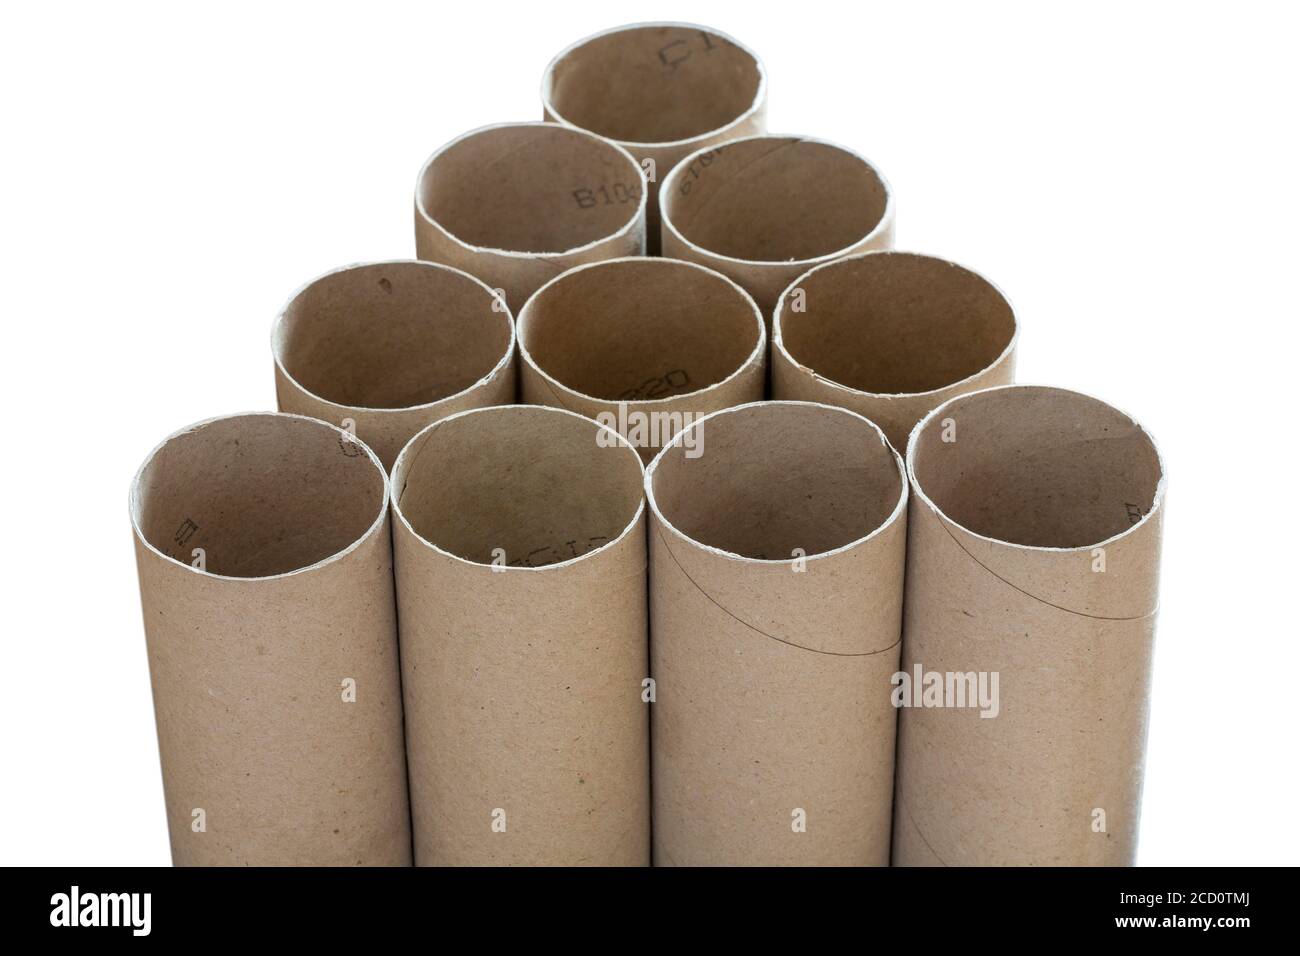 Joseph Banks Me gusta También Tubos vacíos de papel higiénico sobre fondo blanco, sin papel higiénico -  concepto de compra de rollos de papel higiénico pánico como la gente pánico  comprar artículos esenciales en el Reino Unido